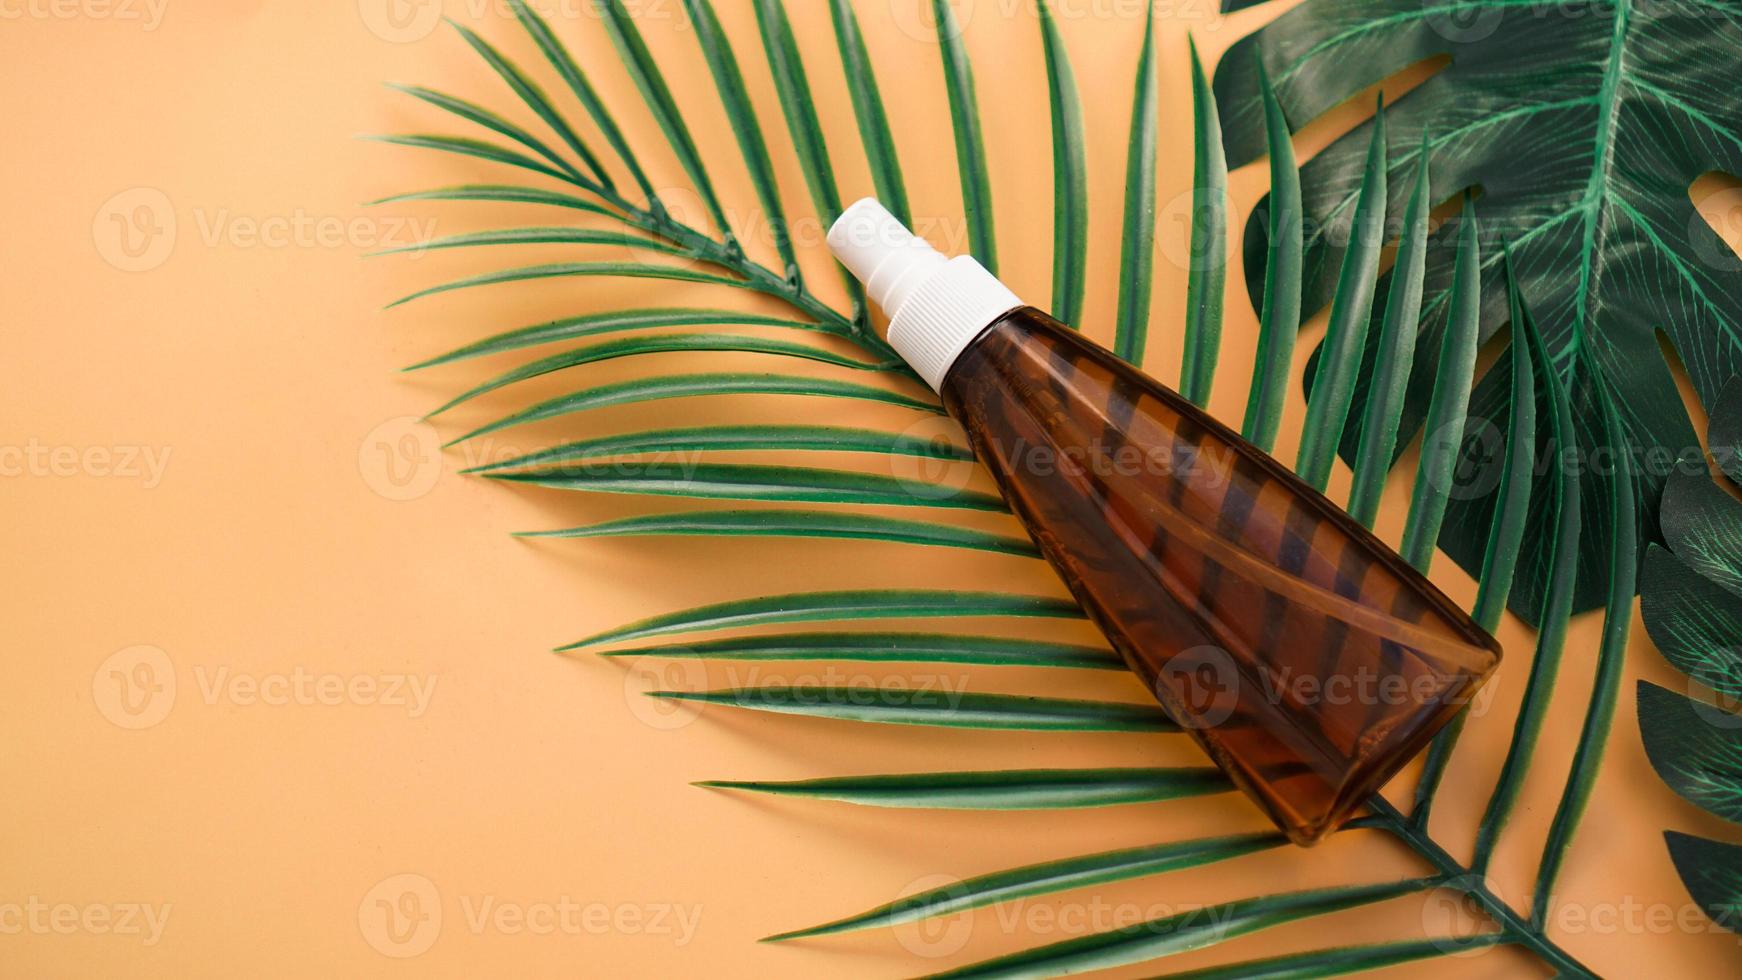 Botella de loción bronceadora sobre fondo con hojas tropicales foto